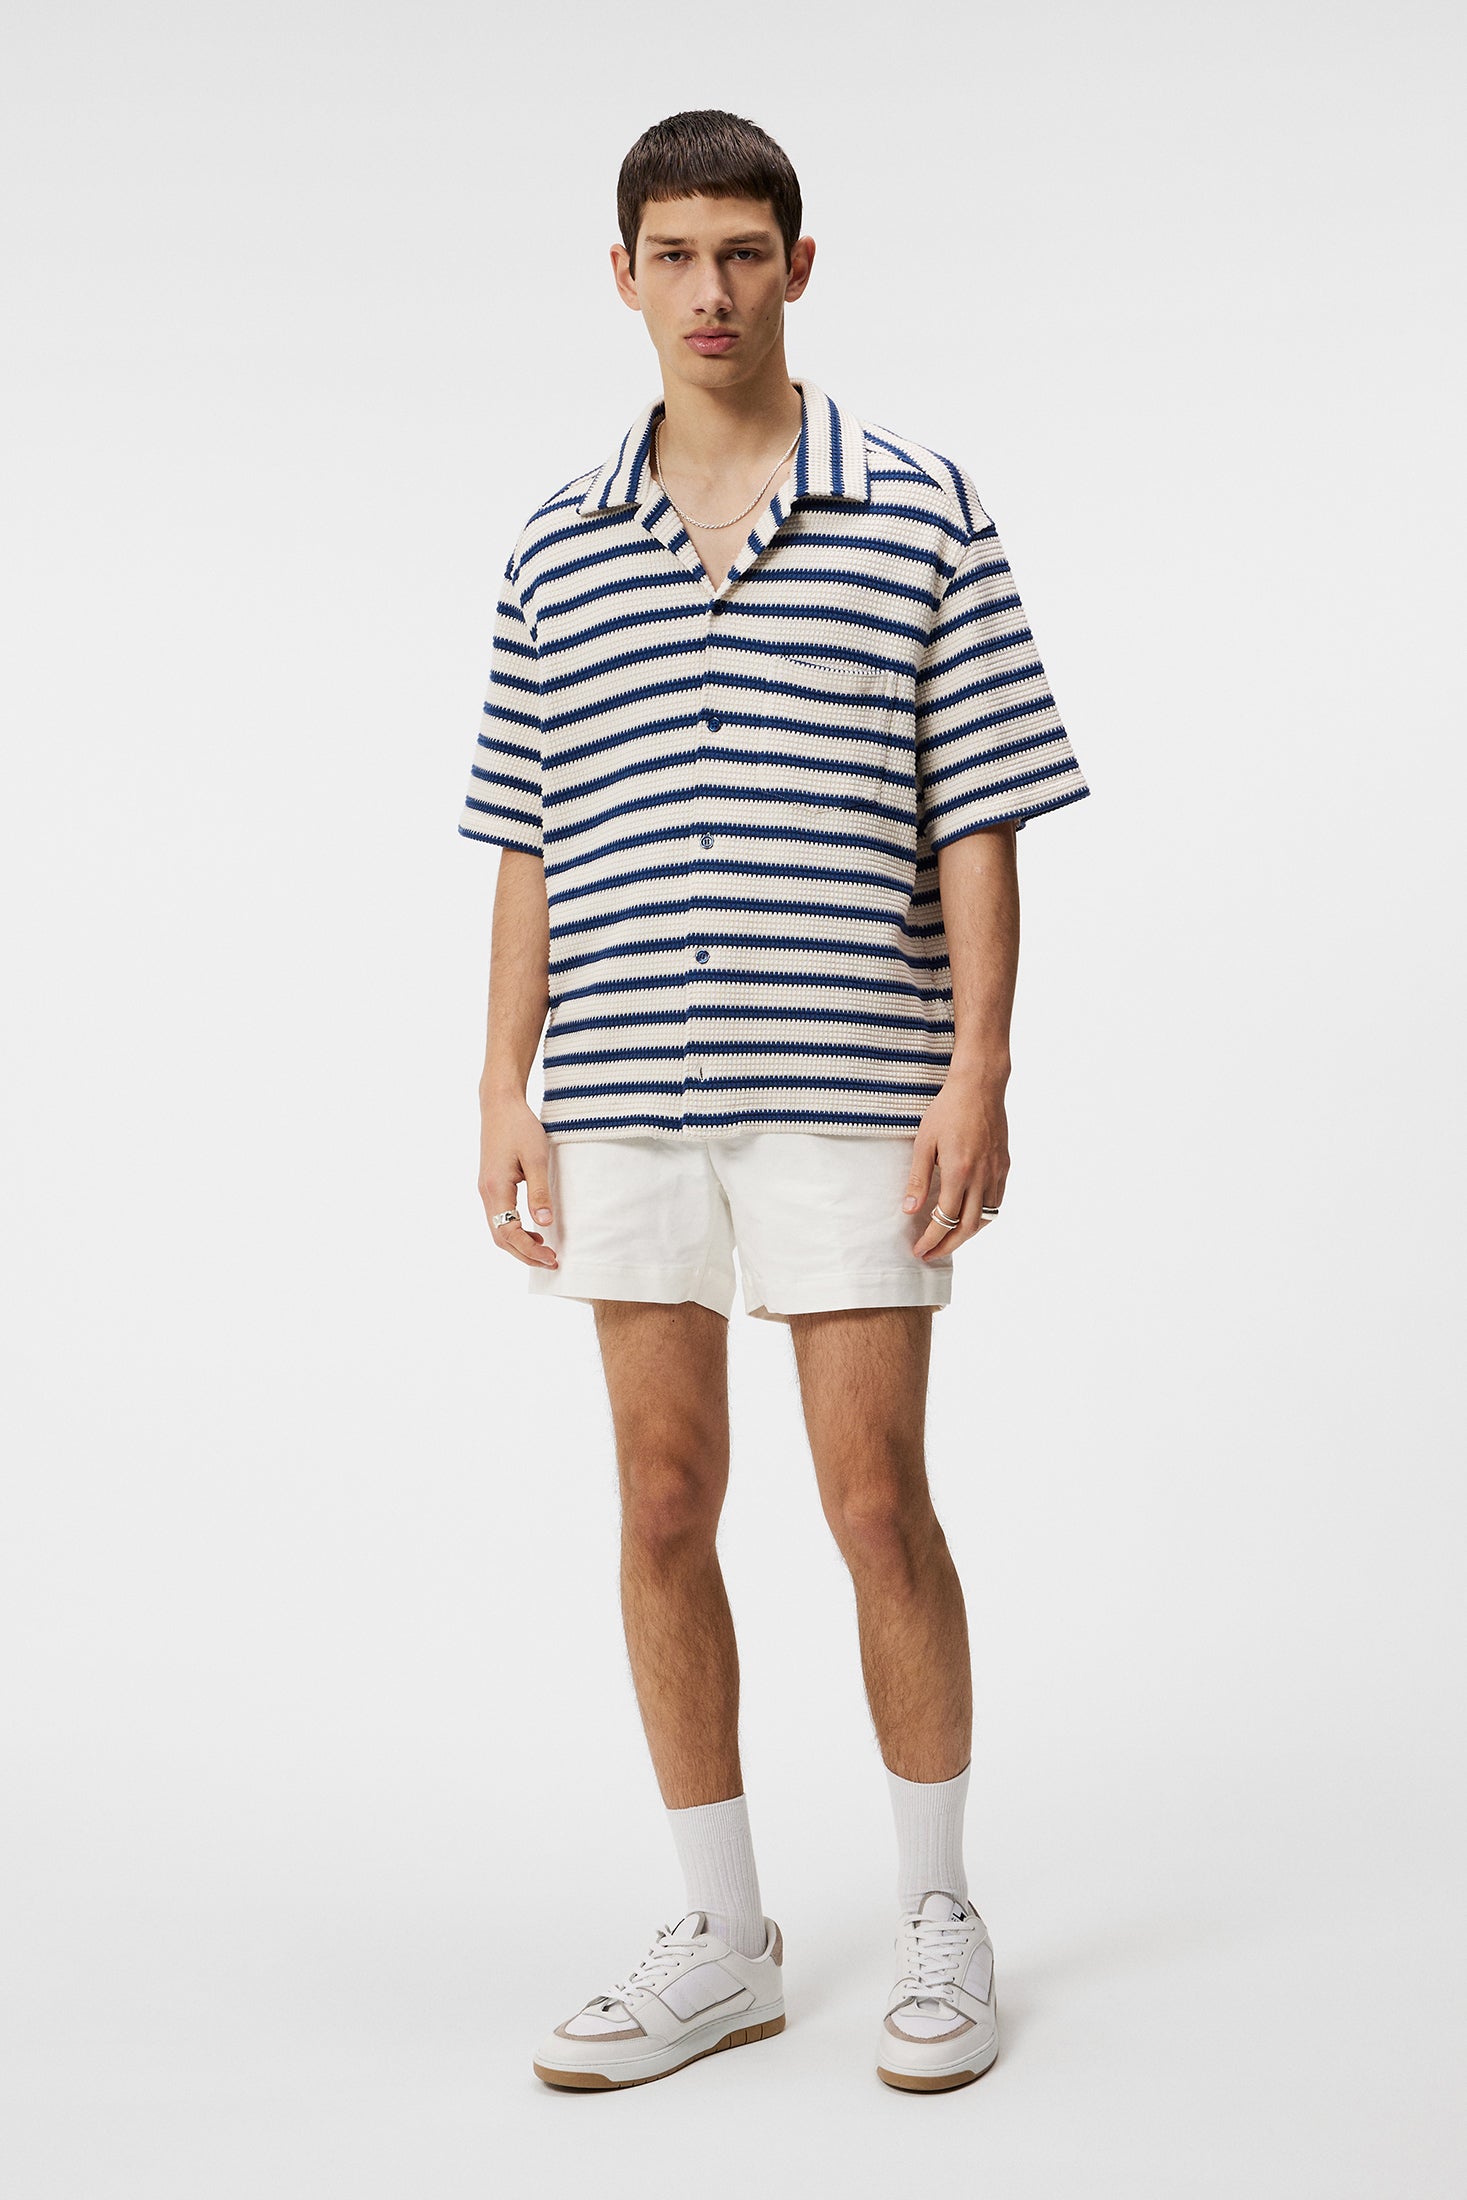 Tiro Resort Stripe Shirt